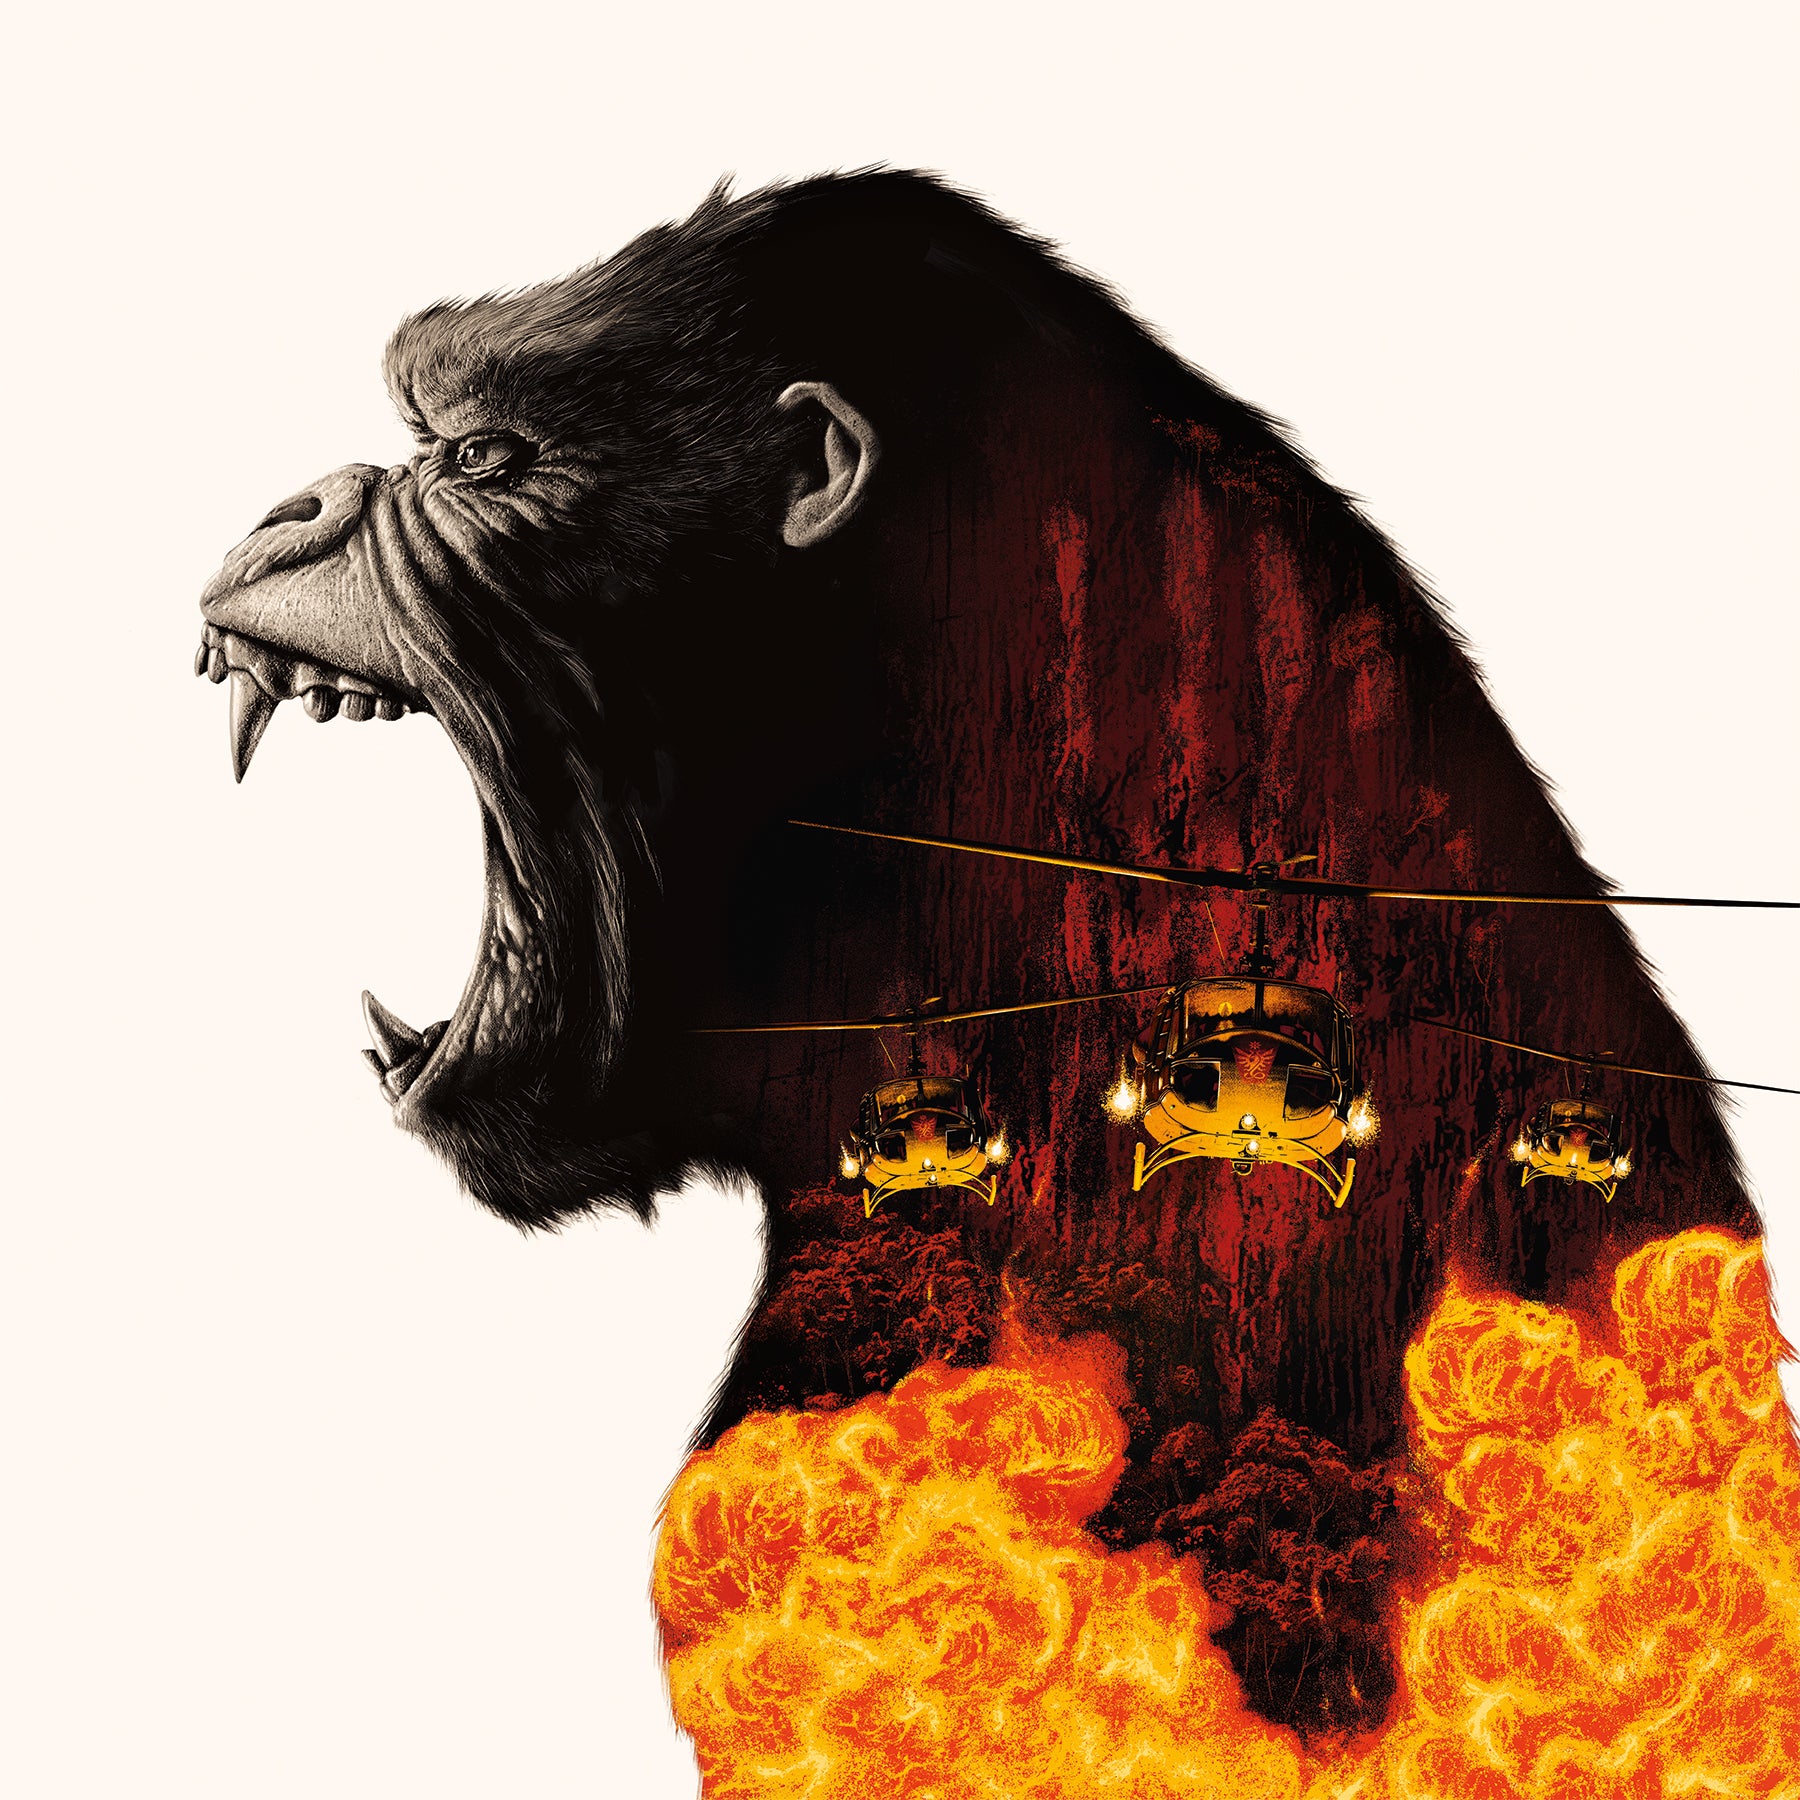 Kong: Skull Island – Waxwork Records